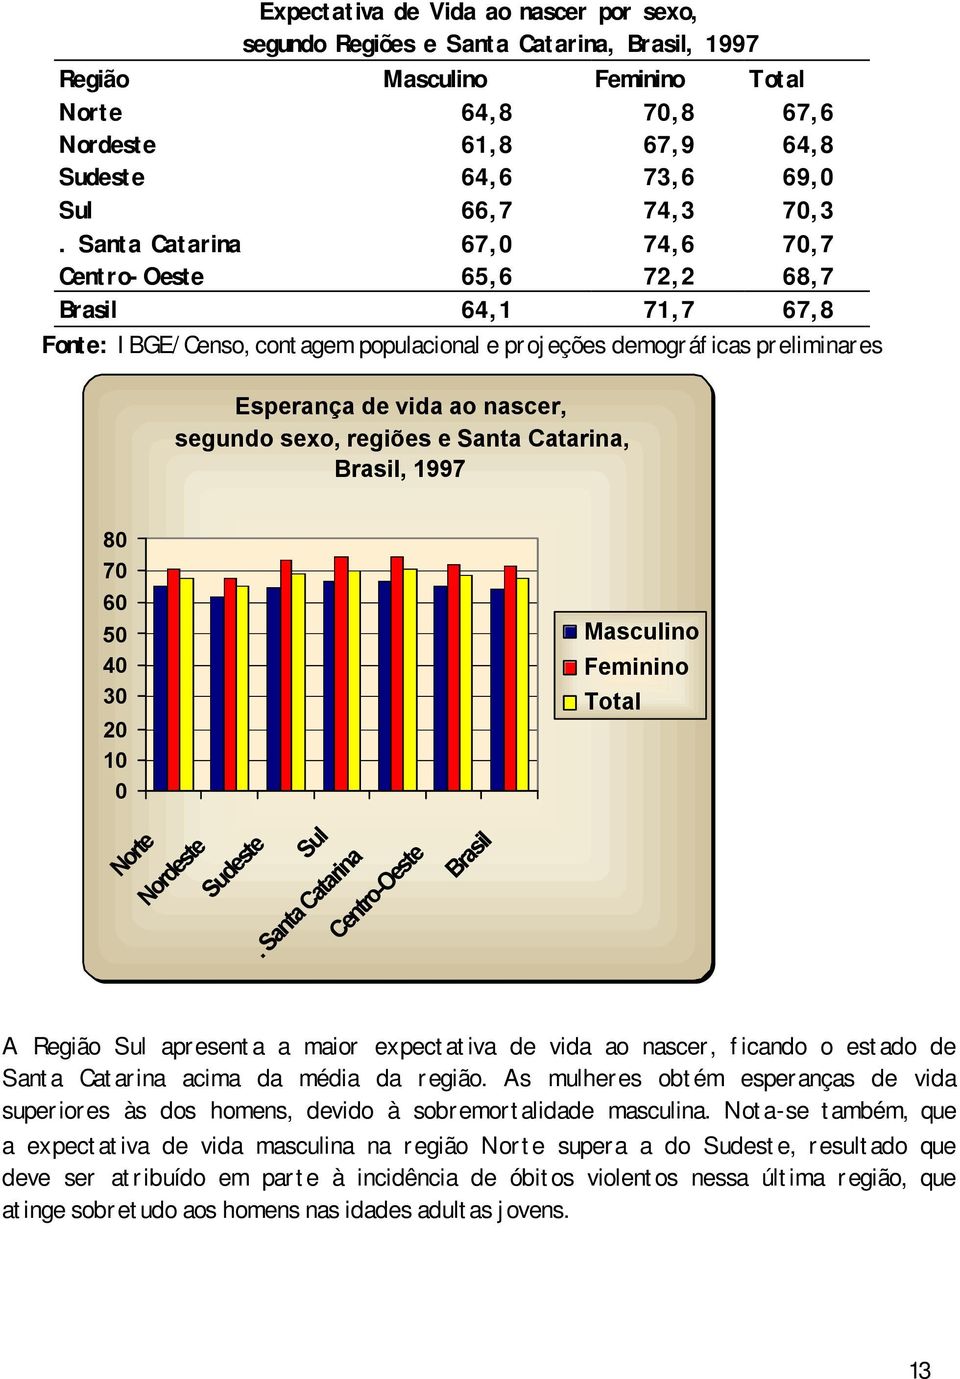 Masculino Feminino Total A Região apresenta a maior expectativa de vida ao nascer, ficando o estado de Santa Catarina acima da média da região.